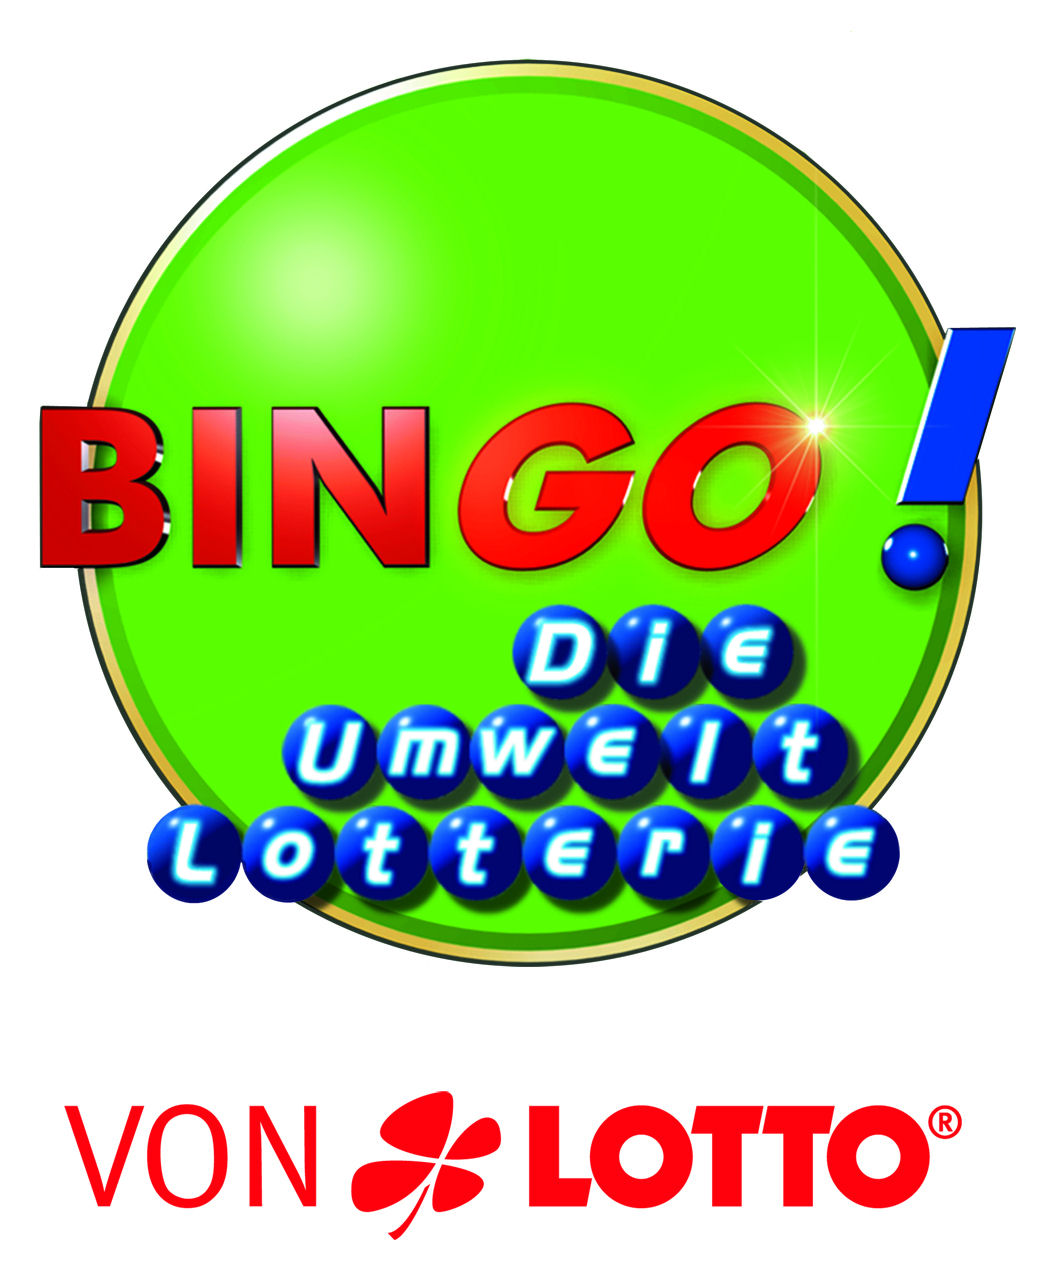 Bingo logo – Dasbesteonlinecasino